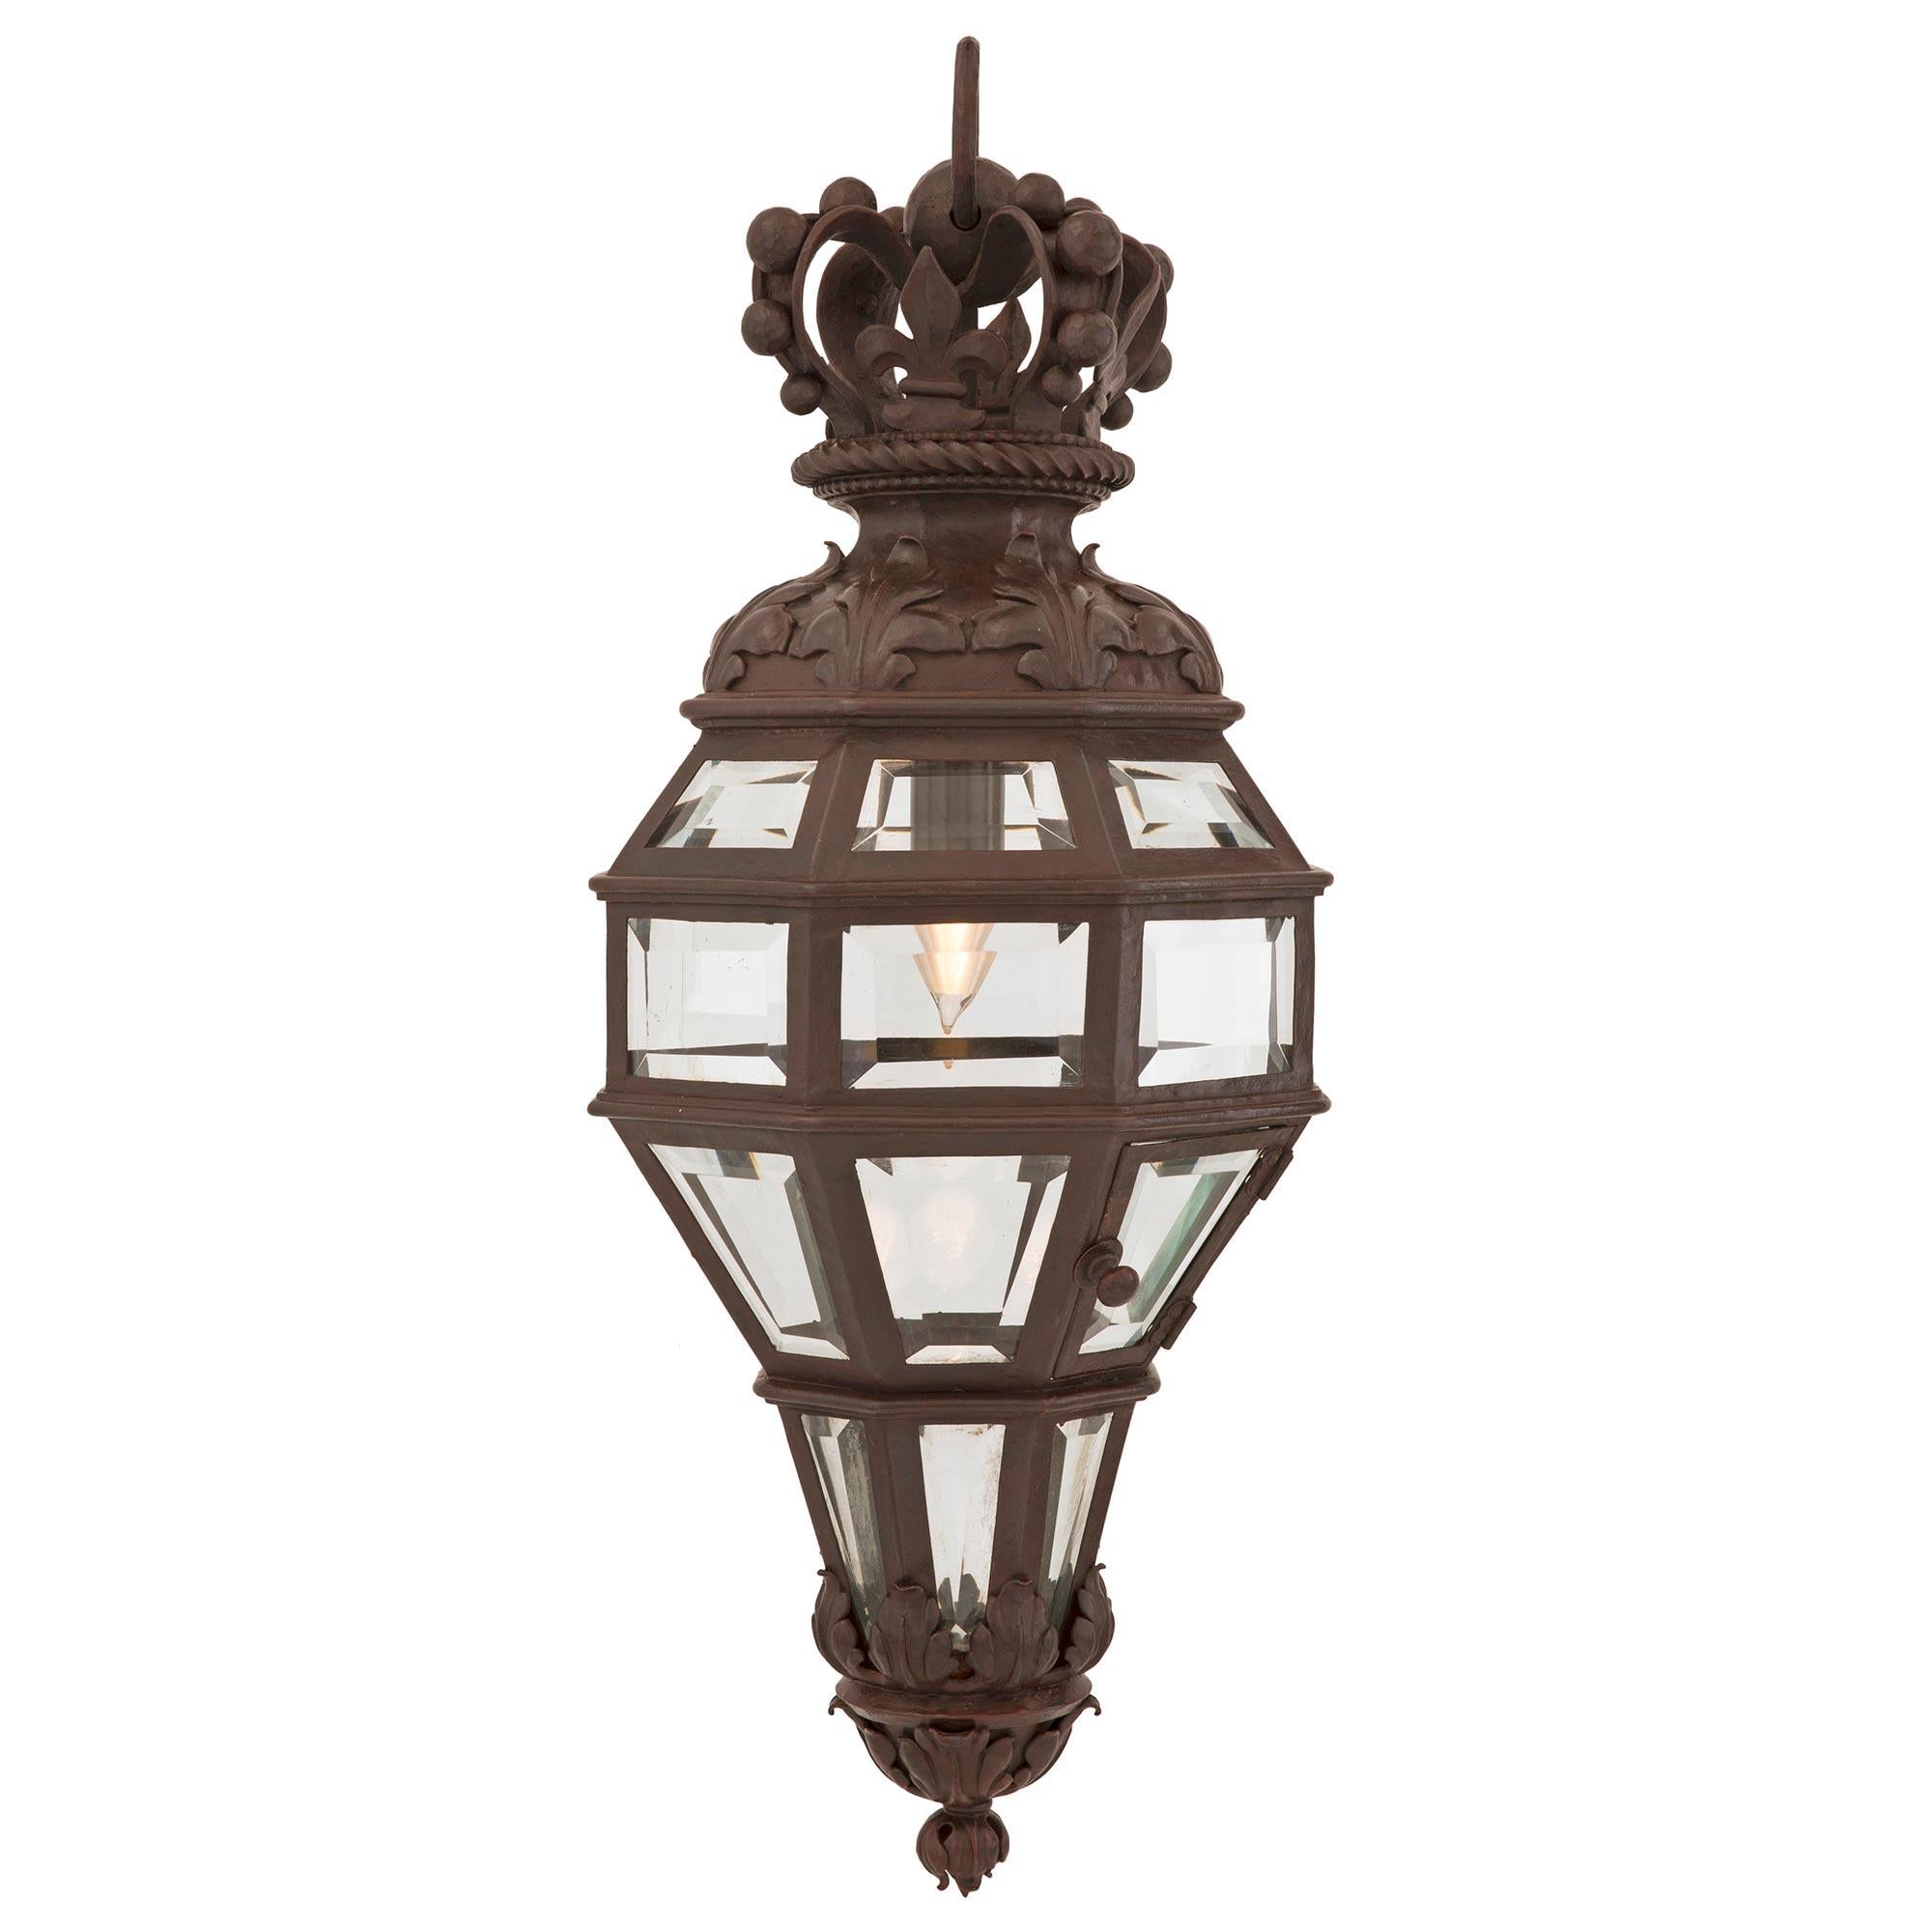 Exceptionnelle lanterne de style Louis XVI du 19ème siècle, en bronze patiné et cristal. La lanterne est inspirée d'une lanterne d'antichambre qui se trouve encore au Palais de Versailles et qui figurait dans le dictionnaire Ameublement d'Henry